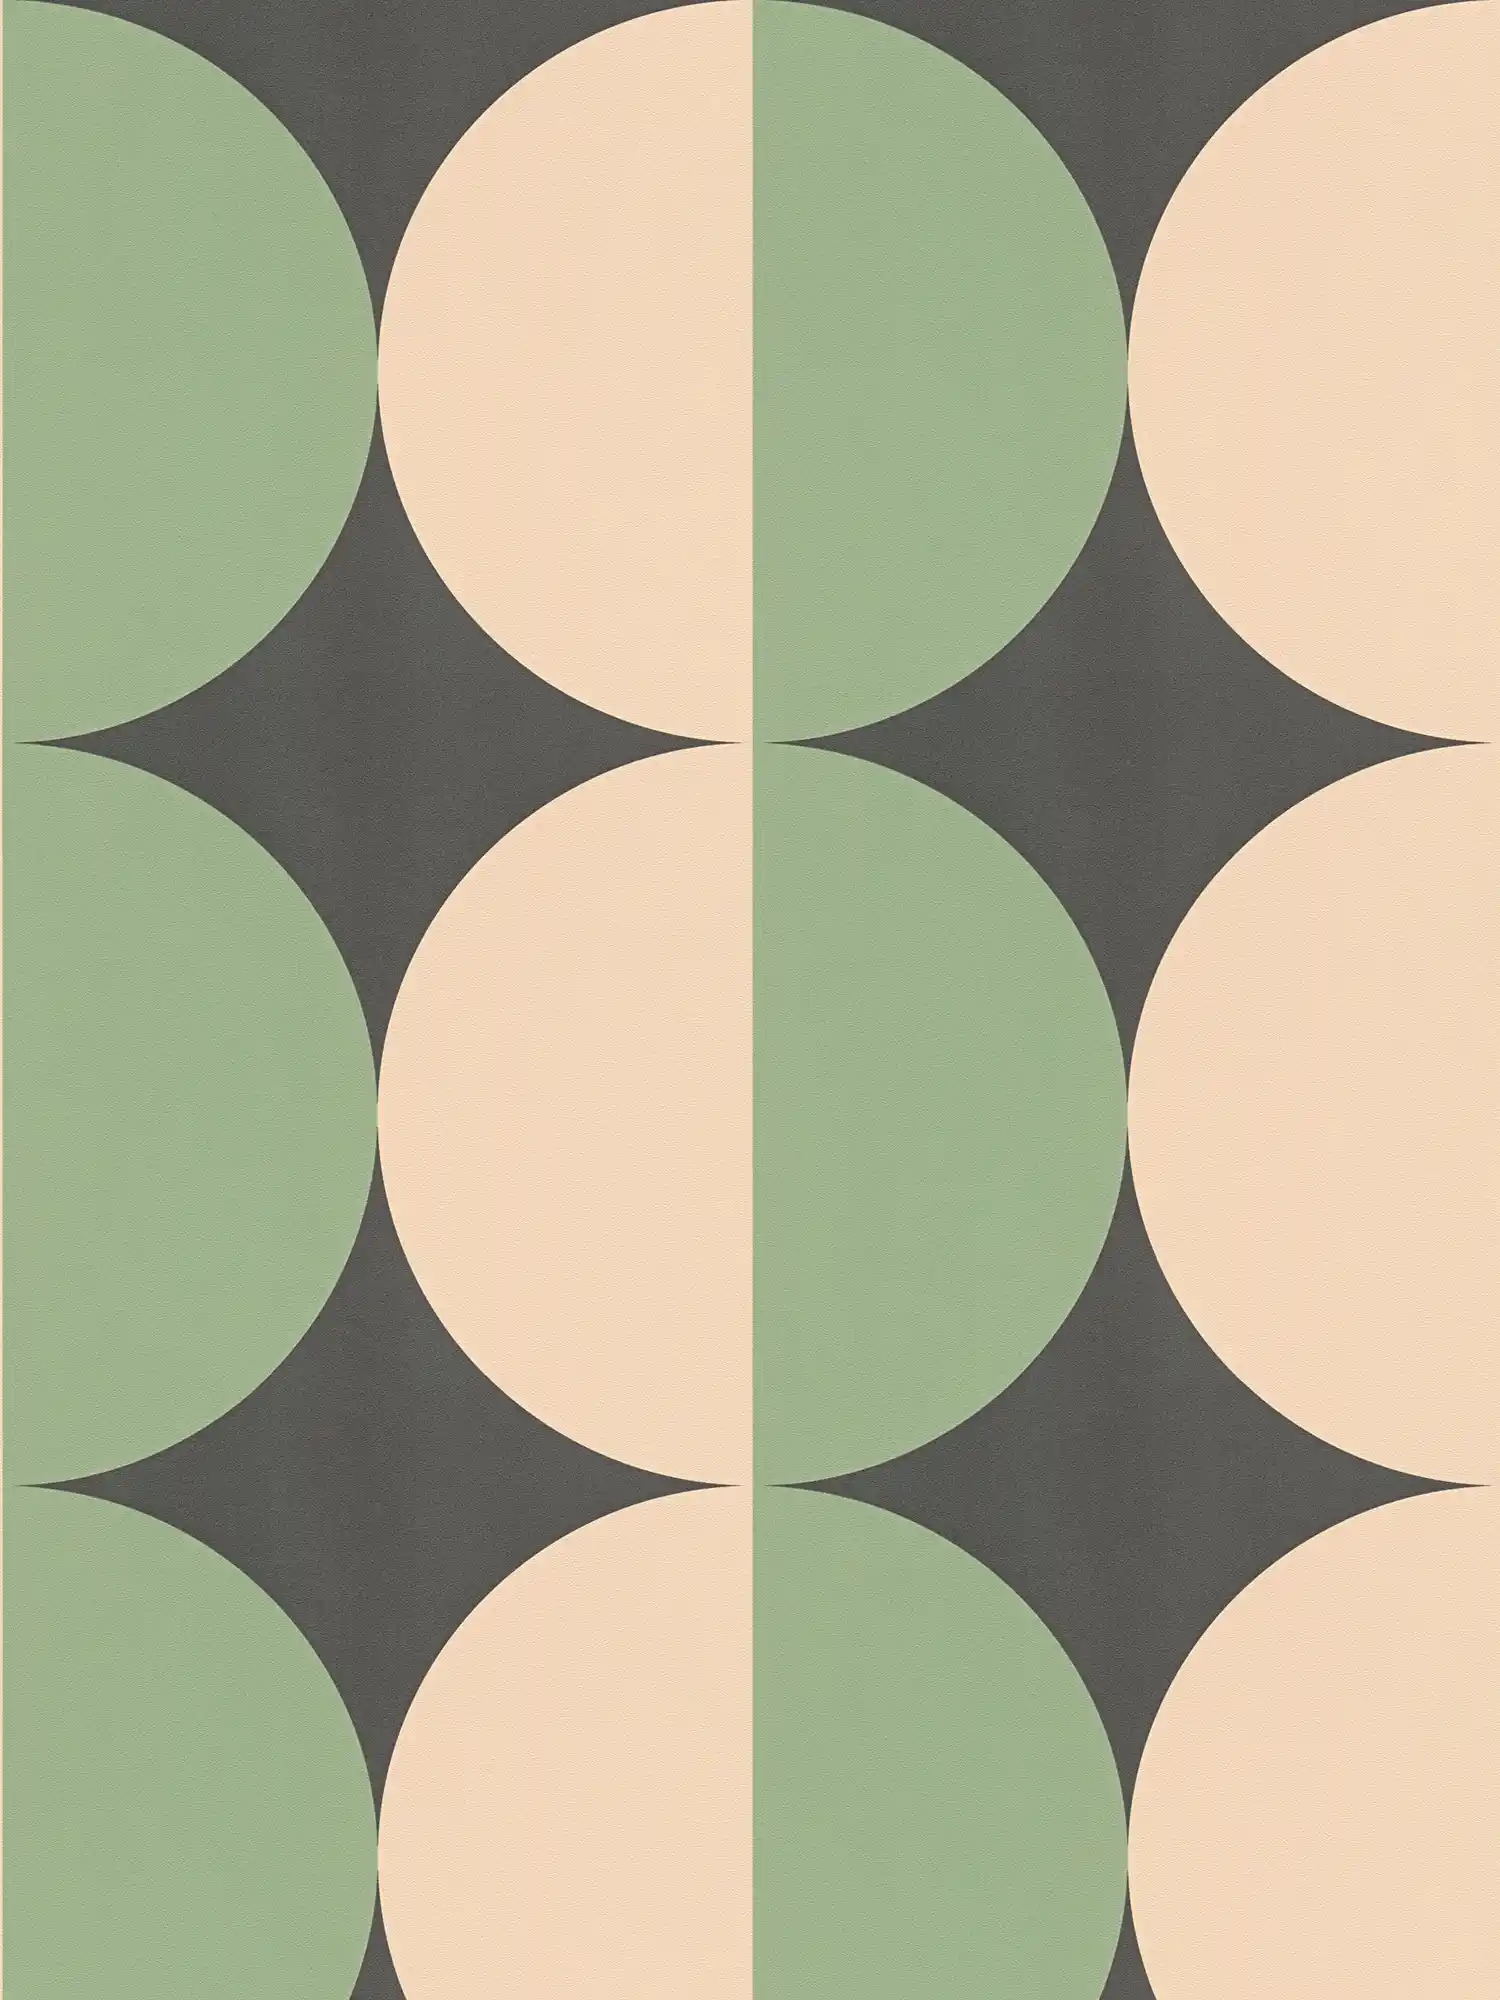         Carta da parati in tessuto non tessuto con motivi grafici a cerchio retro - verde, beige, nero
    